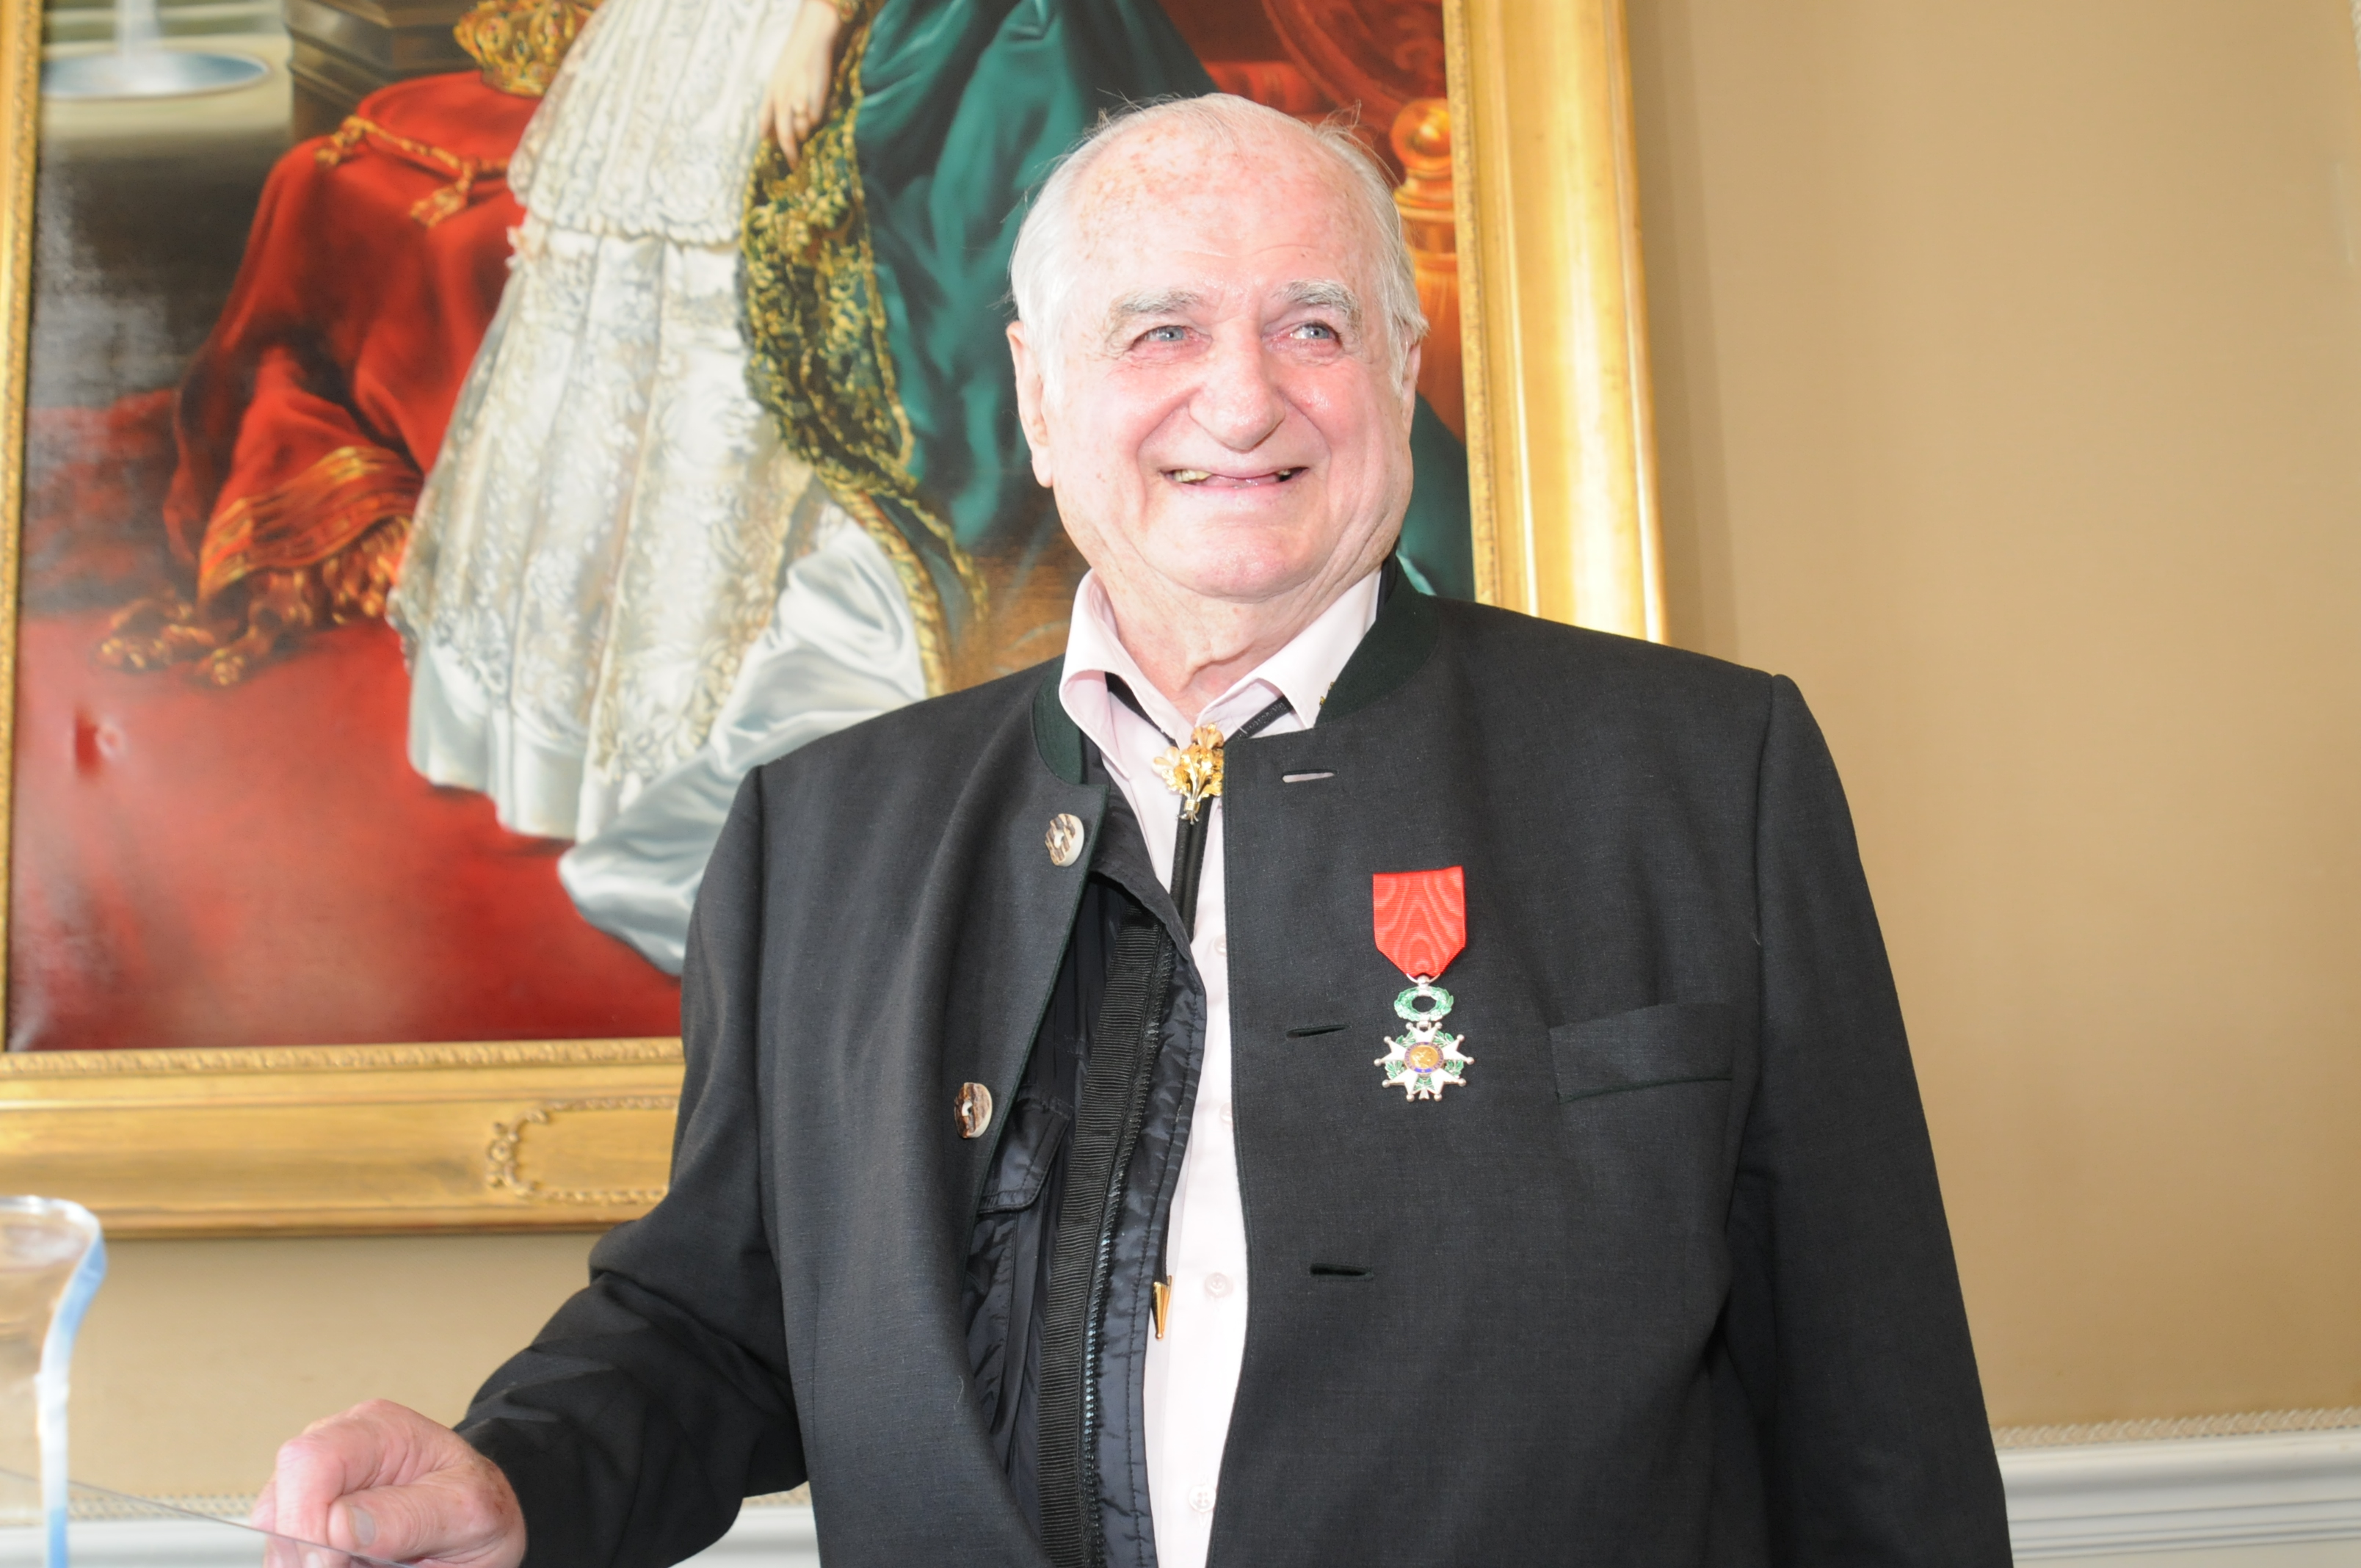 Fotografie von HARIBO-Mitgründer Hans Riegel bei der Aufnahme in die Légion d`Honneur (französische Ehrenlegion), 2010.